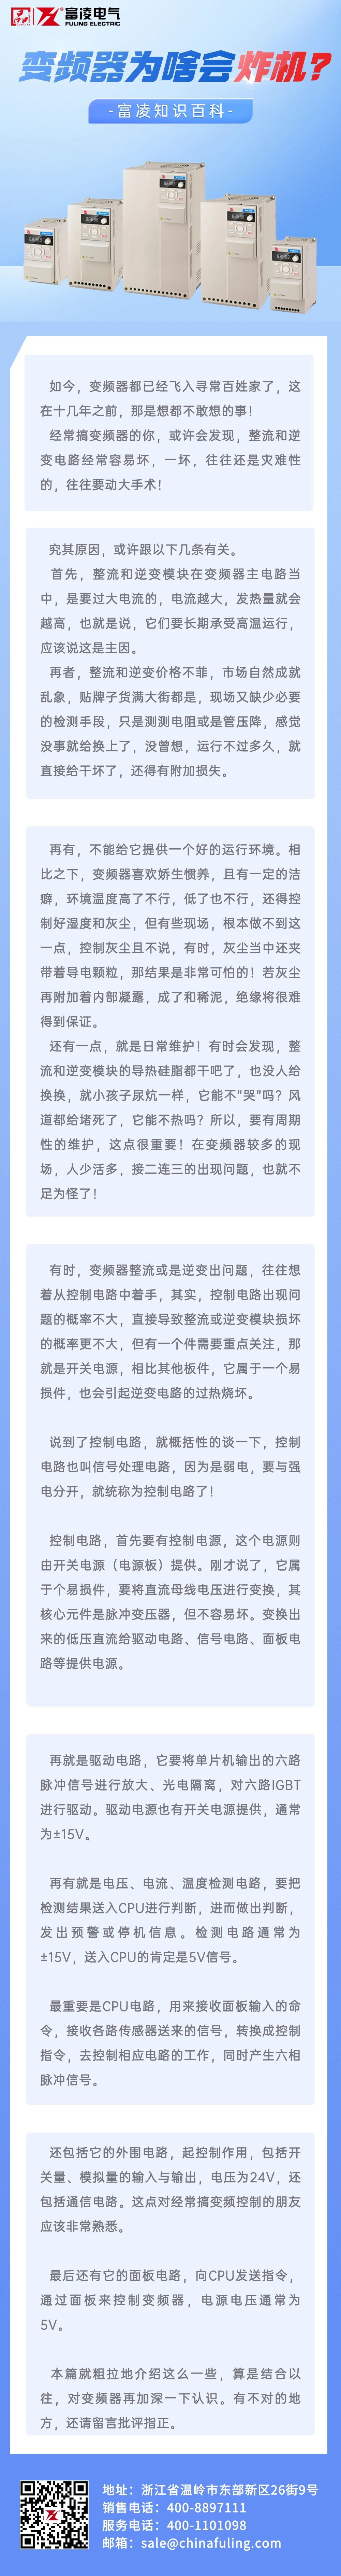 金融期货期权知识科普2.5D轻拟物风文章长图 (3).jpg